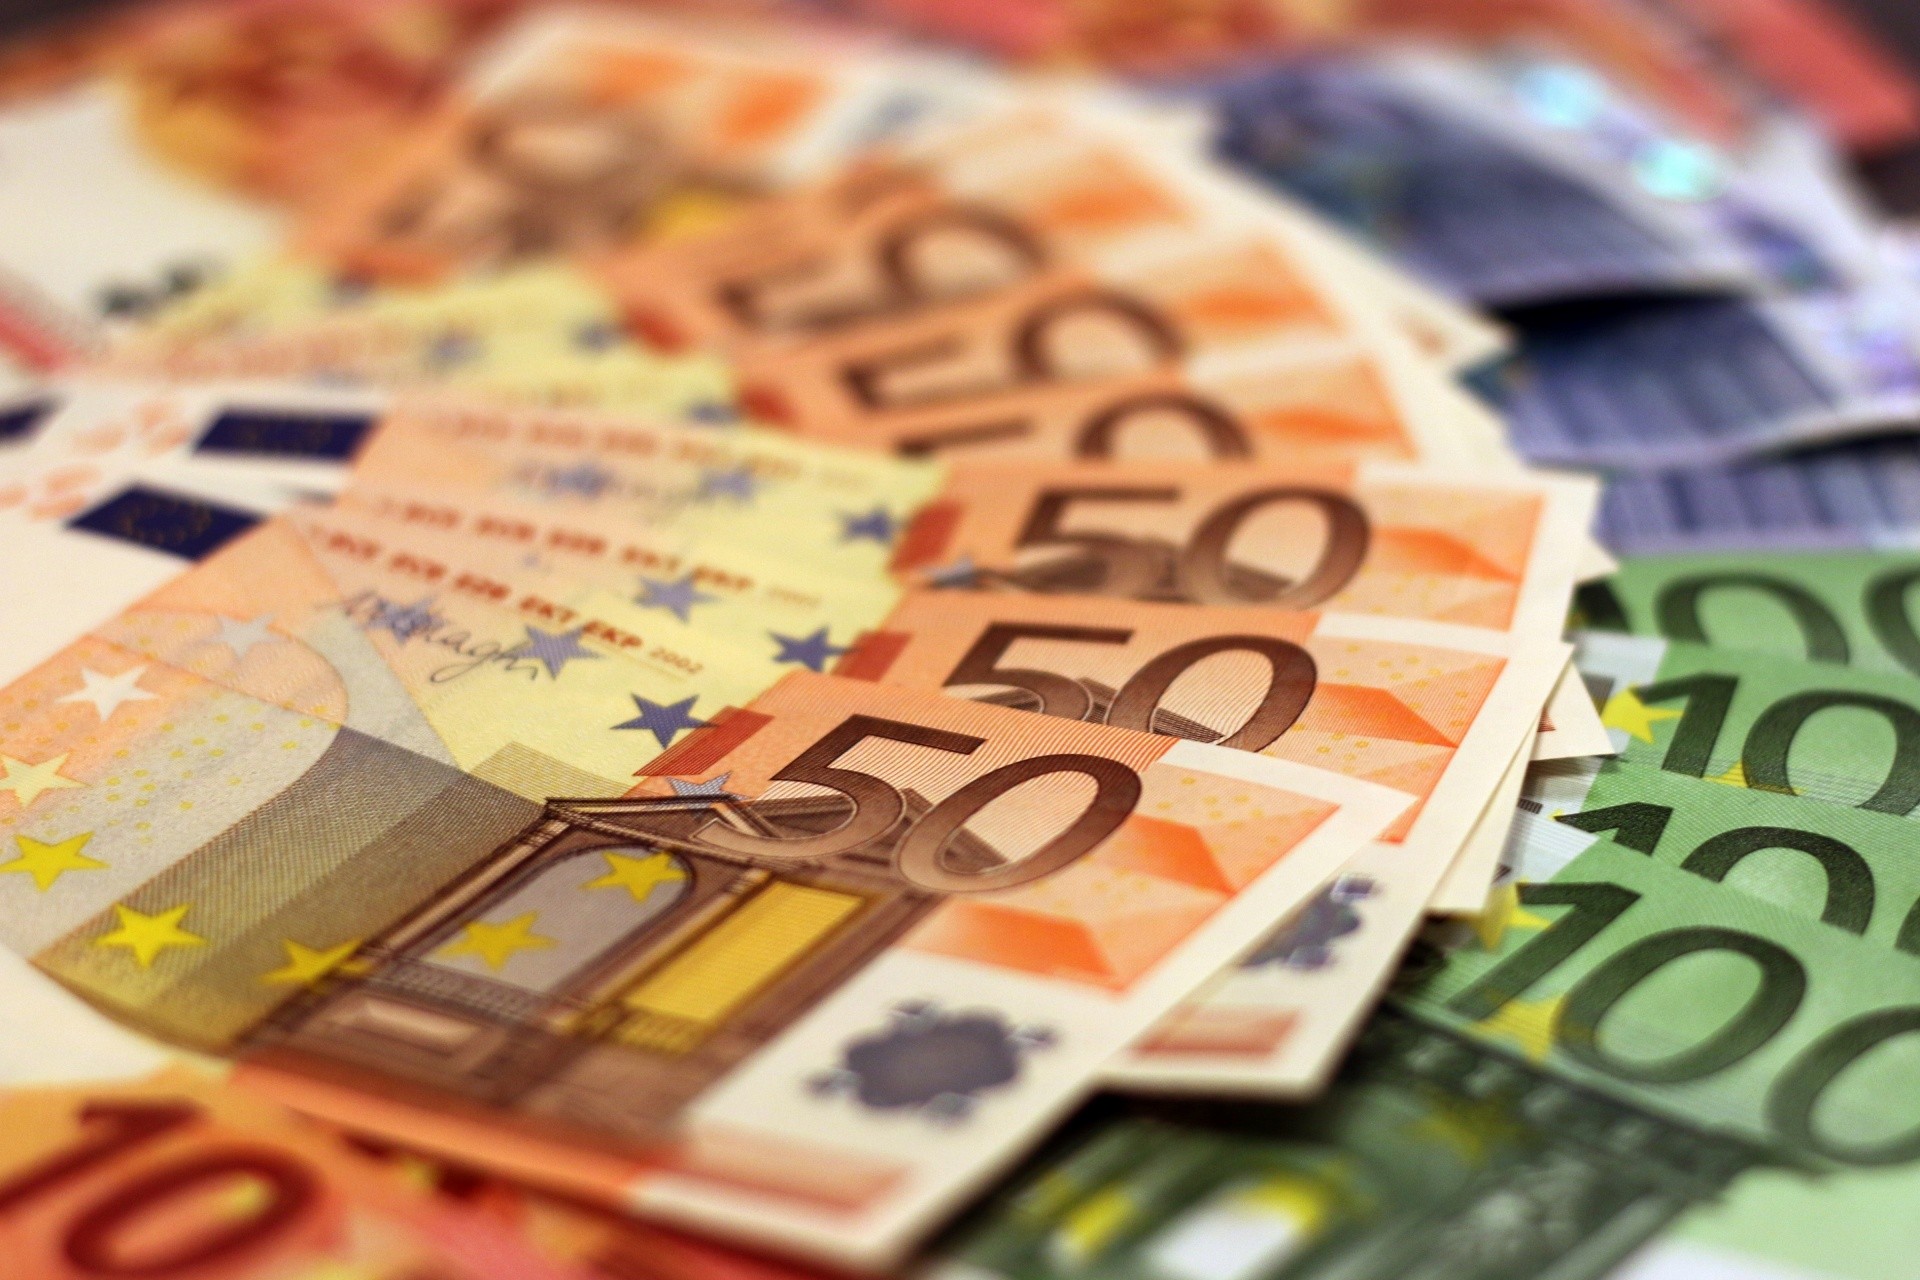 Euro banknotes turn 21